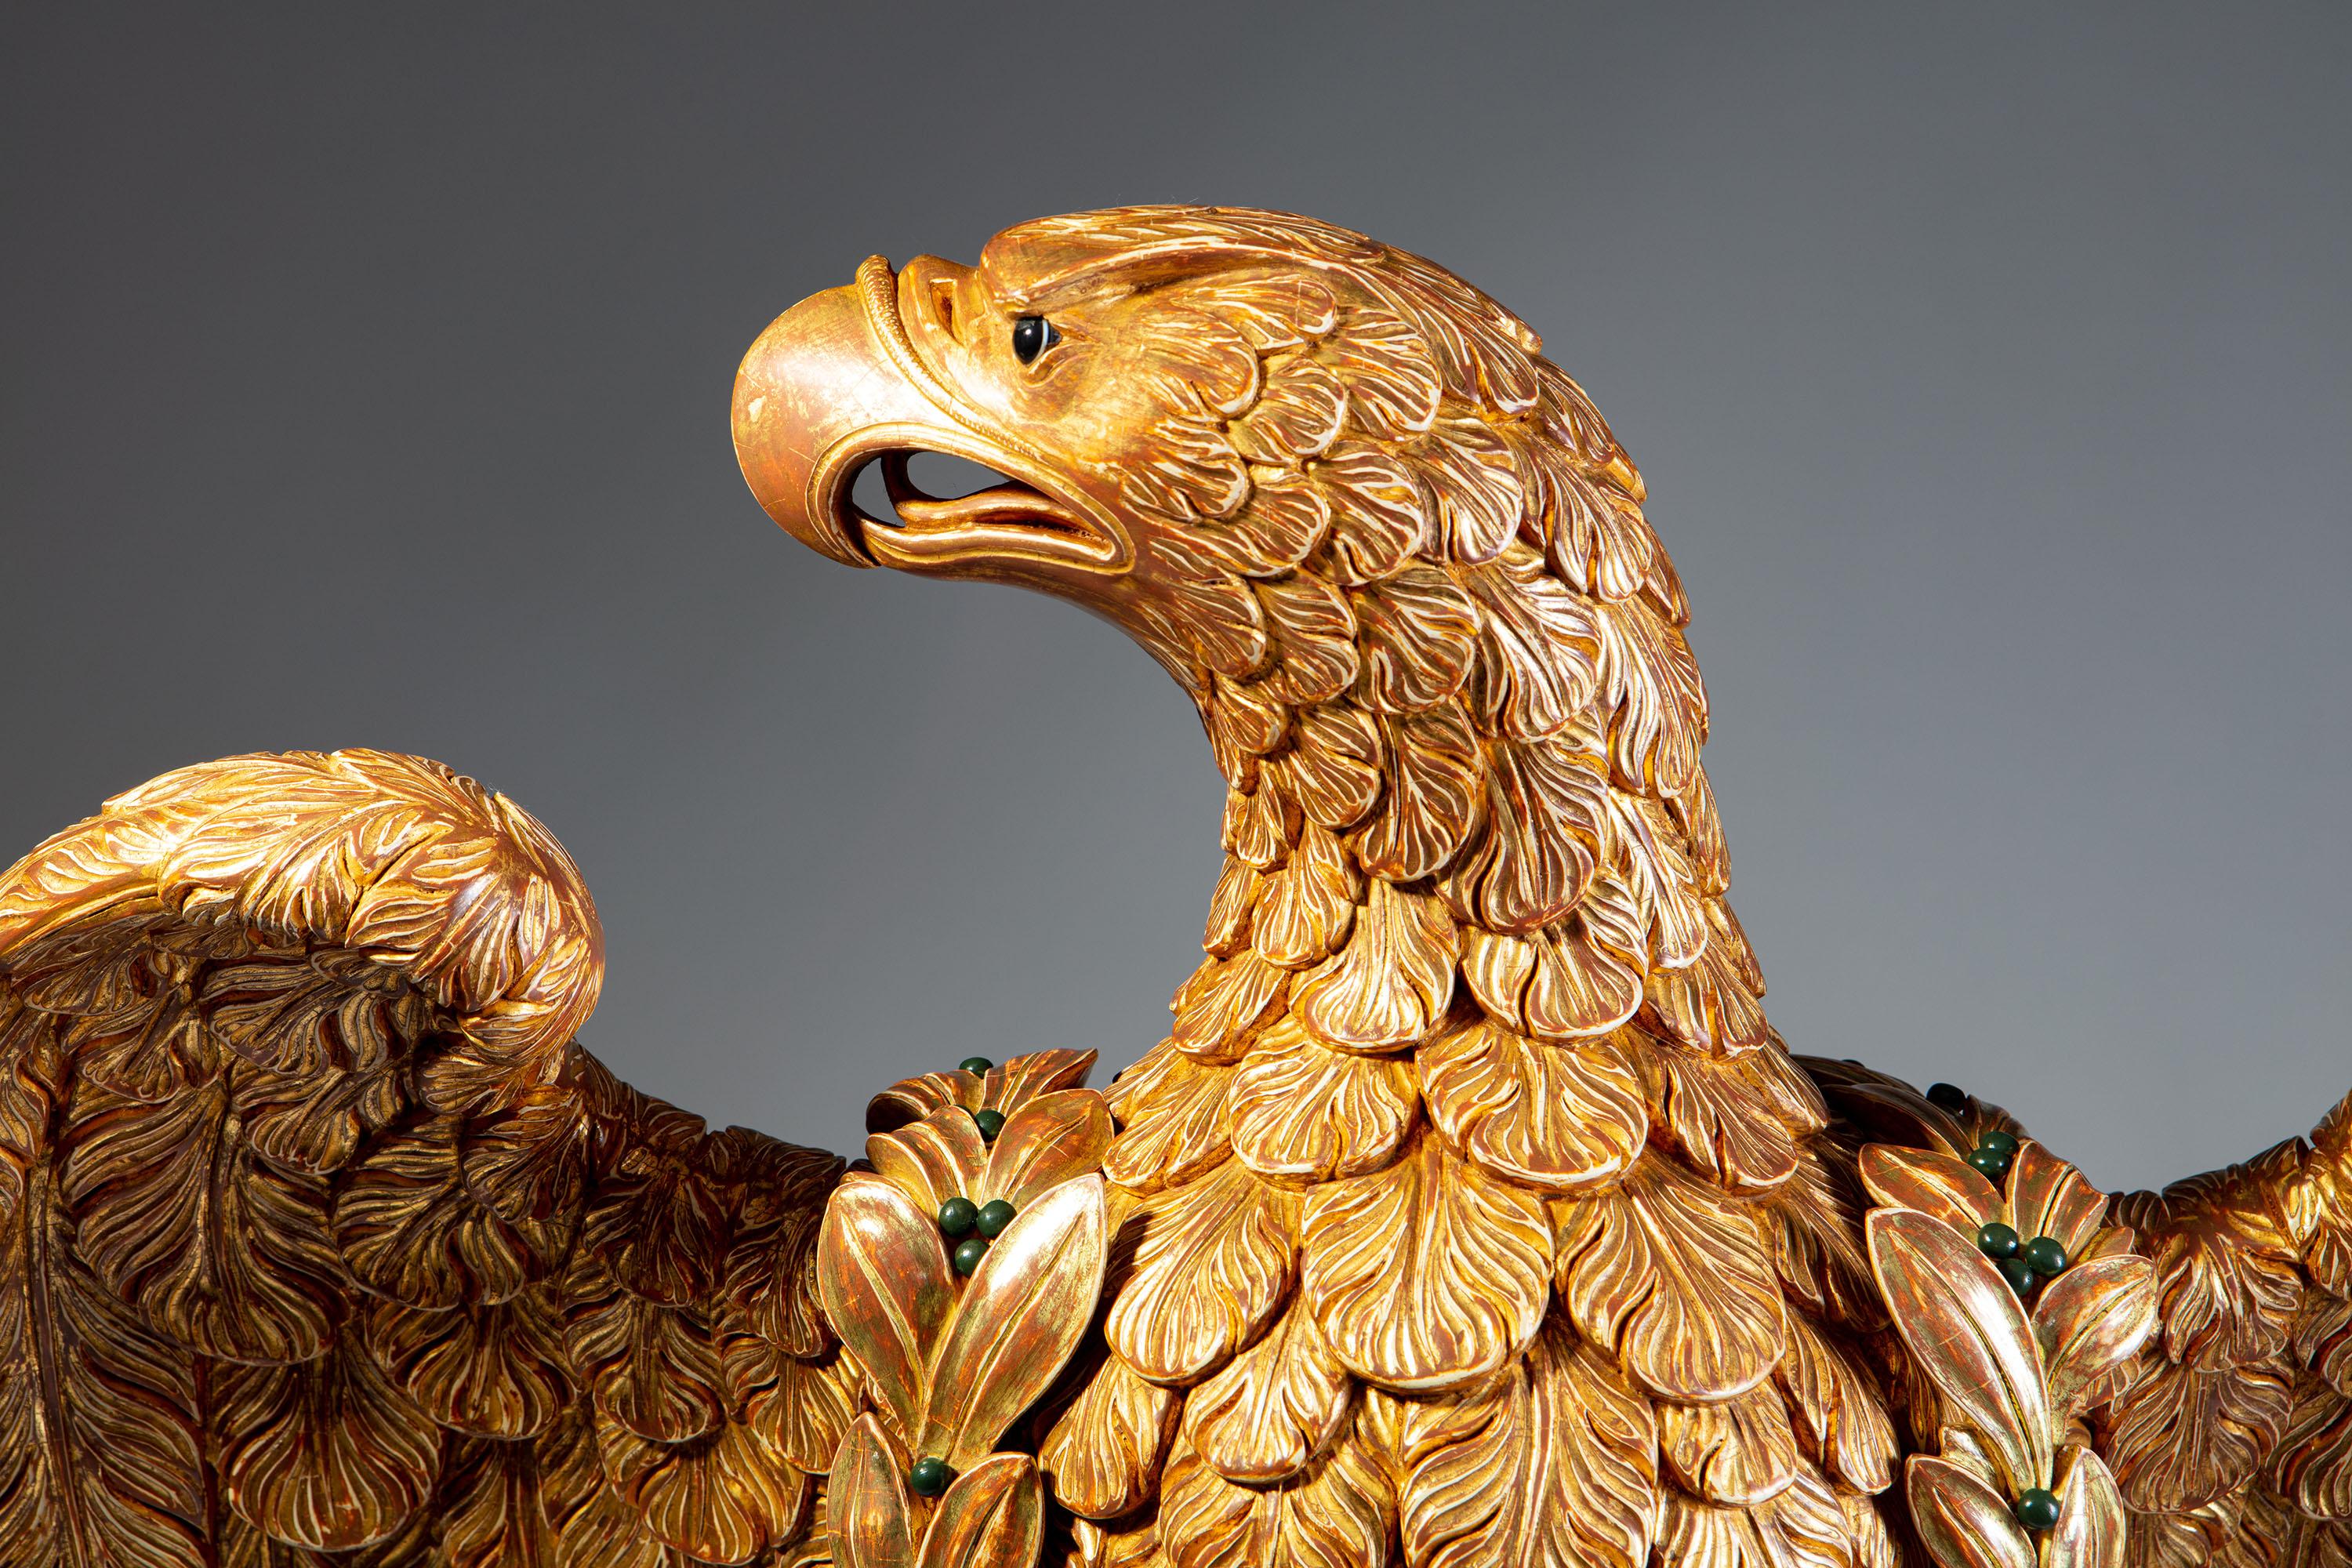 Un superbe aigle en bois doré richement sculpté, perché sur des rochers, les ailes ouvertes, la tête de l'aigle regardant vers sa gauche et muni d'une couronne en bois doré séparée, constellée de cabochons de malachite et d'agate. L'aigle est posé